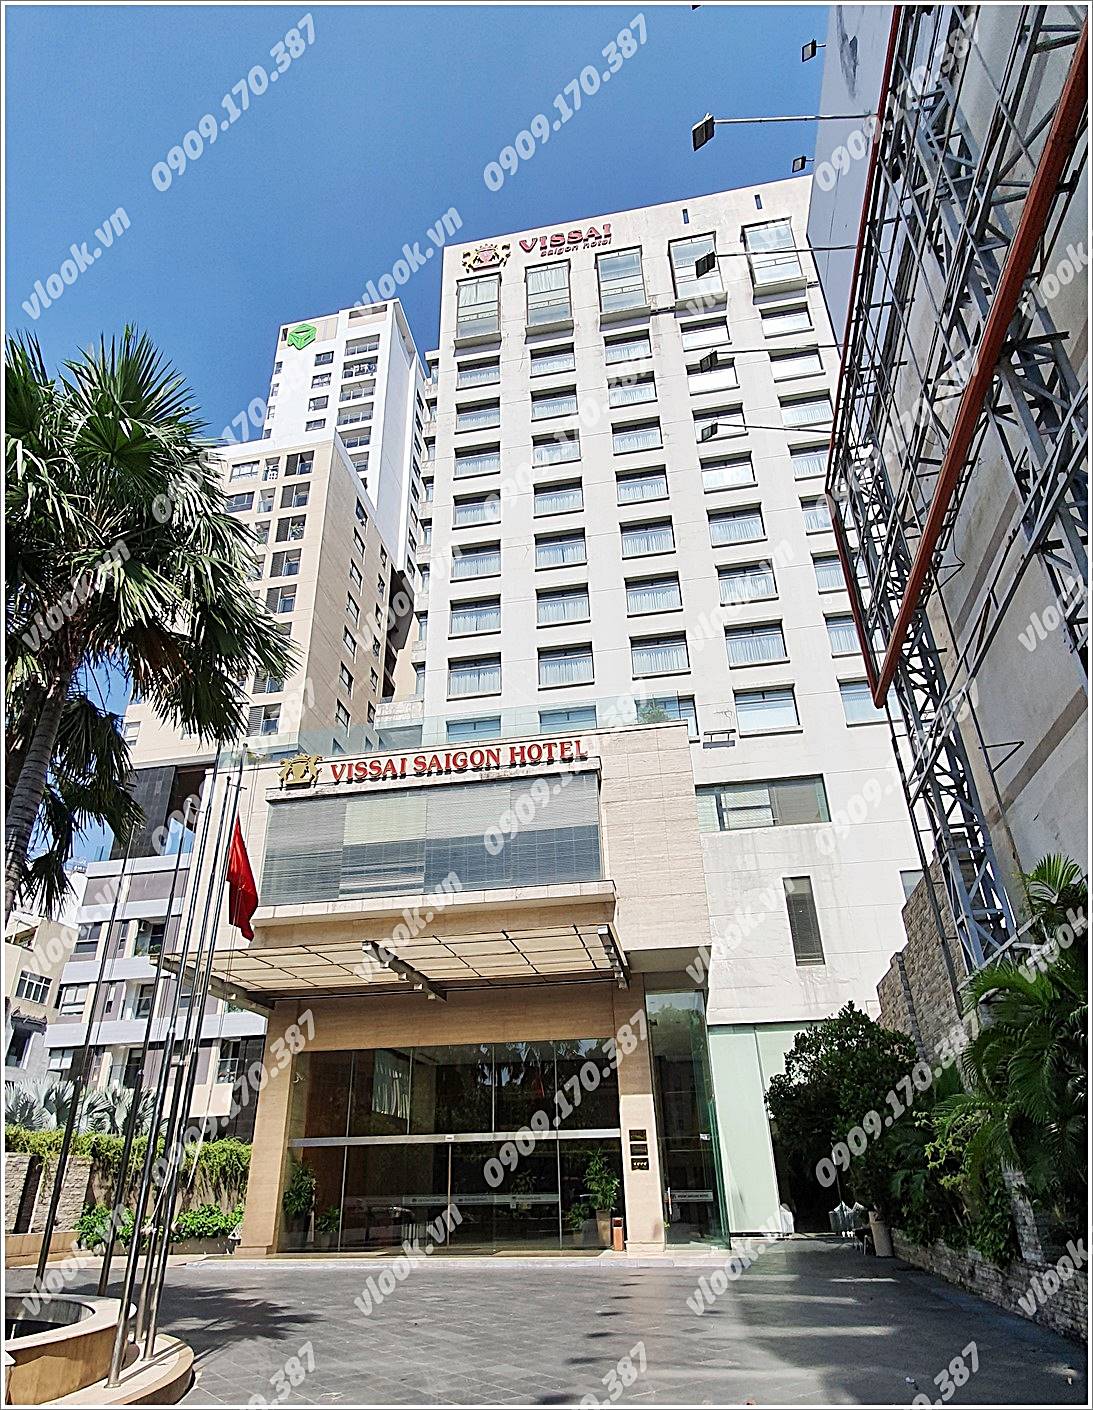 Cao ốc cho thuê văn phòng tòa nhà Vissai Saigon Building, Nguyễn Văn Trỗi, Quận Phú Nhuận, TPHCM - vlook.vn